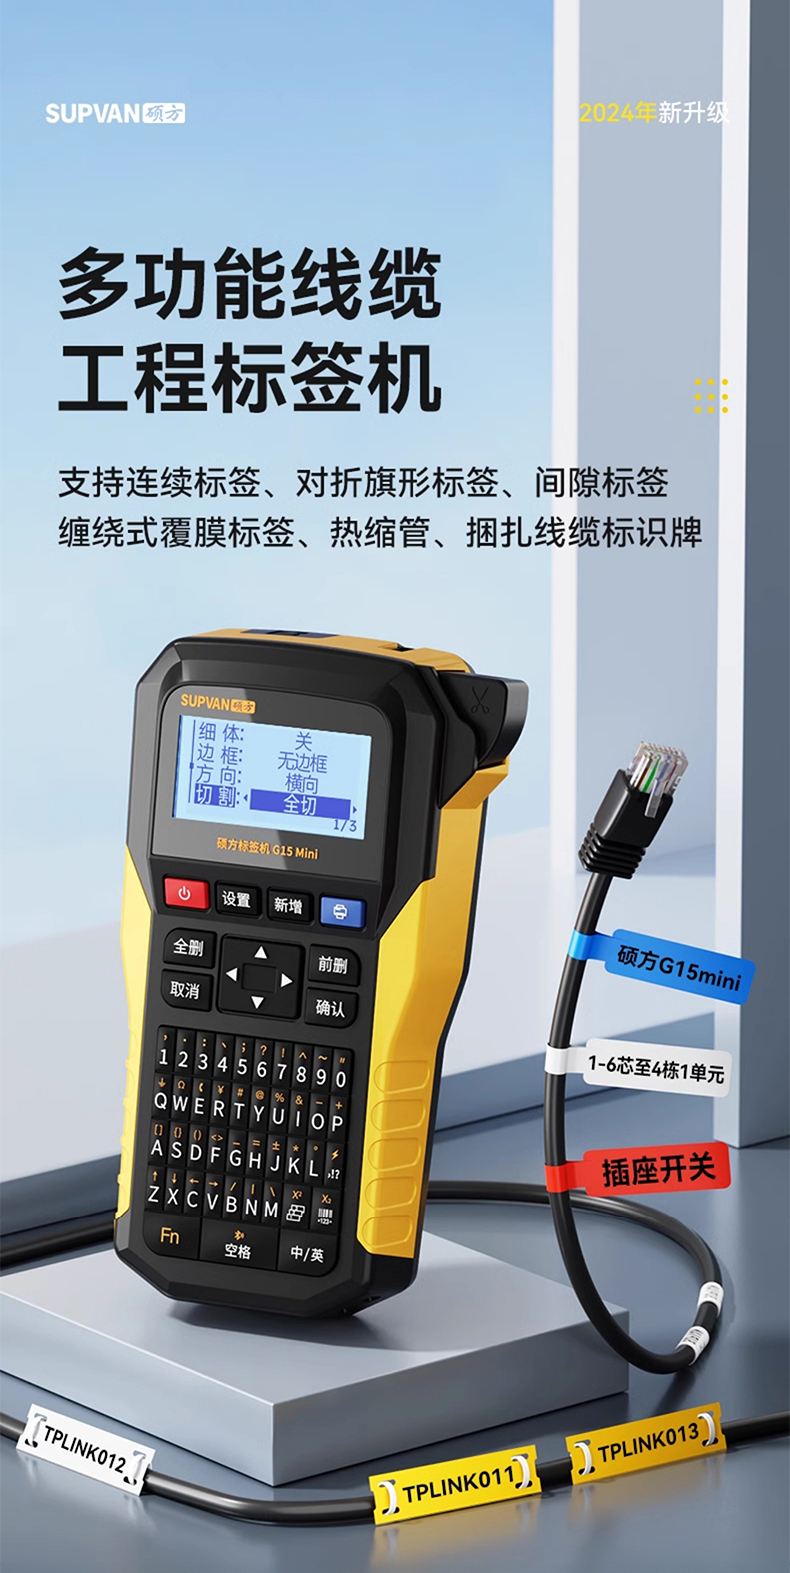 G15mini硕方多功能工程线缆标签机